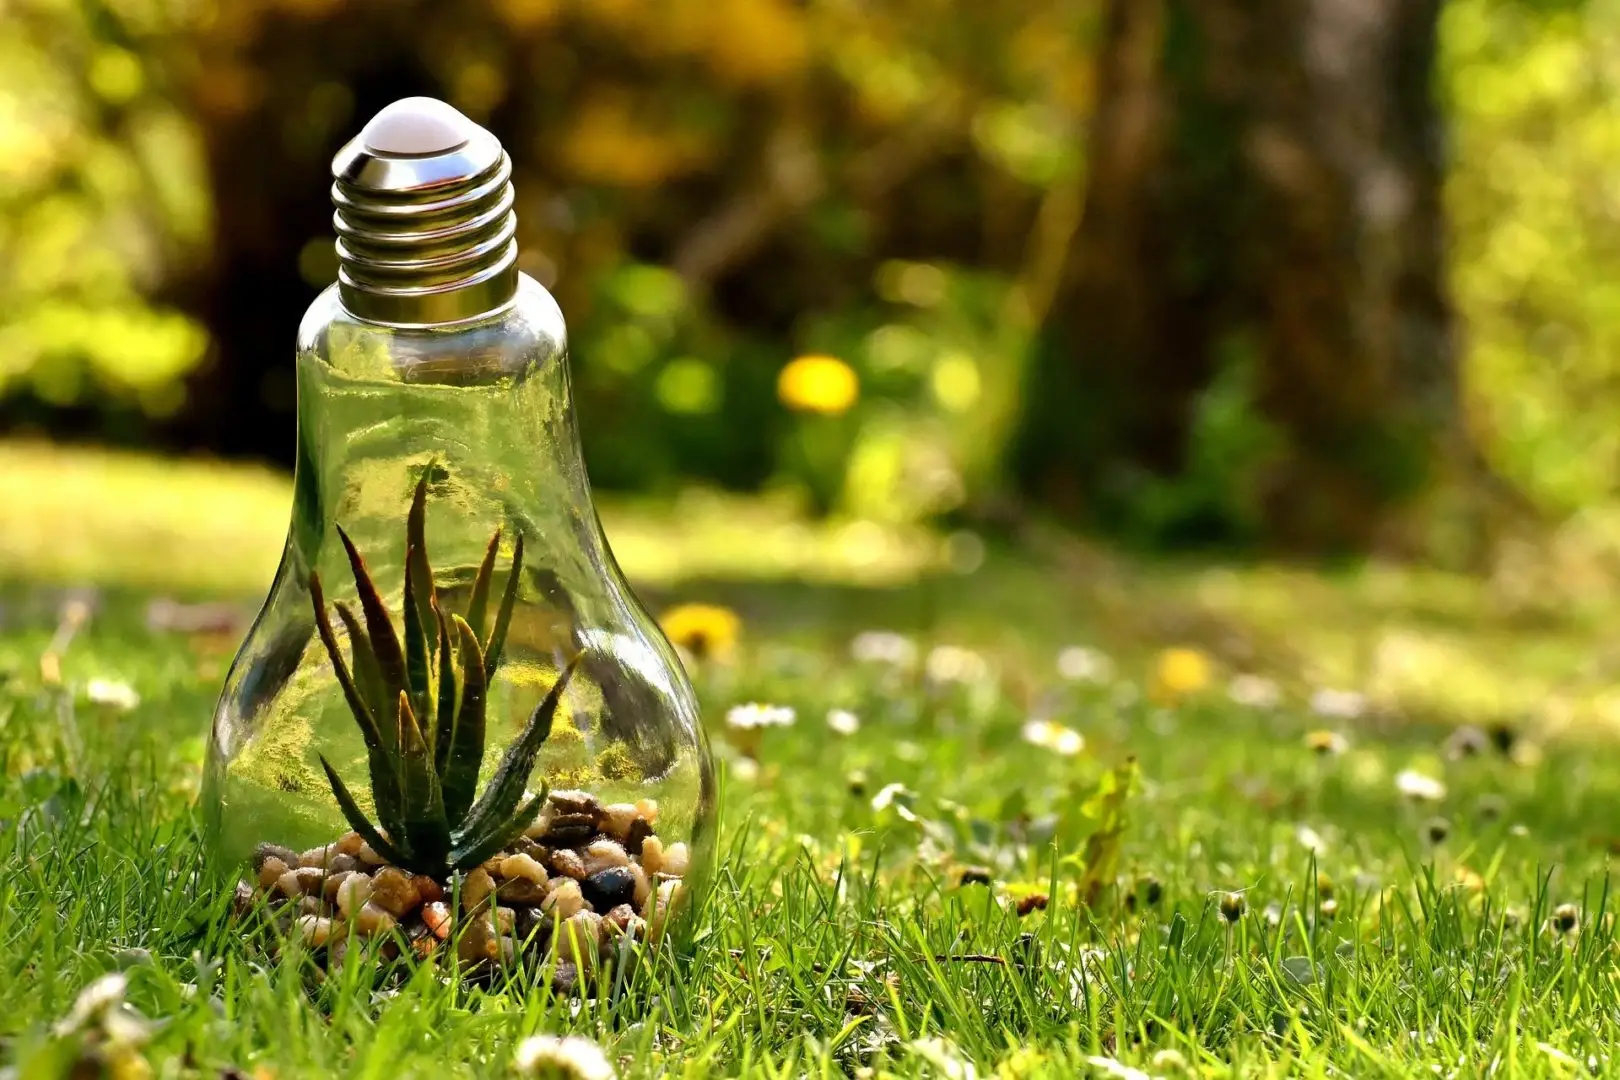 Kreative Darstellung einer Glühbirne als Terrarium mit einer kleinen Aloe-Pflanze und Kieselsteinen auf einer Wiese im Sonnenlicht, symbolisch für nachhaltige Energie und grüne Innovationen sowie den Neubeginn durch Coaching.